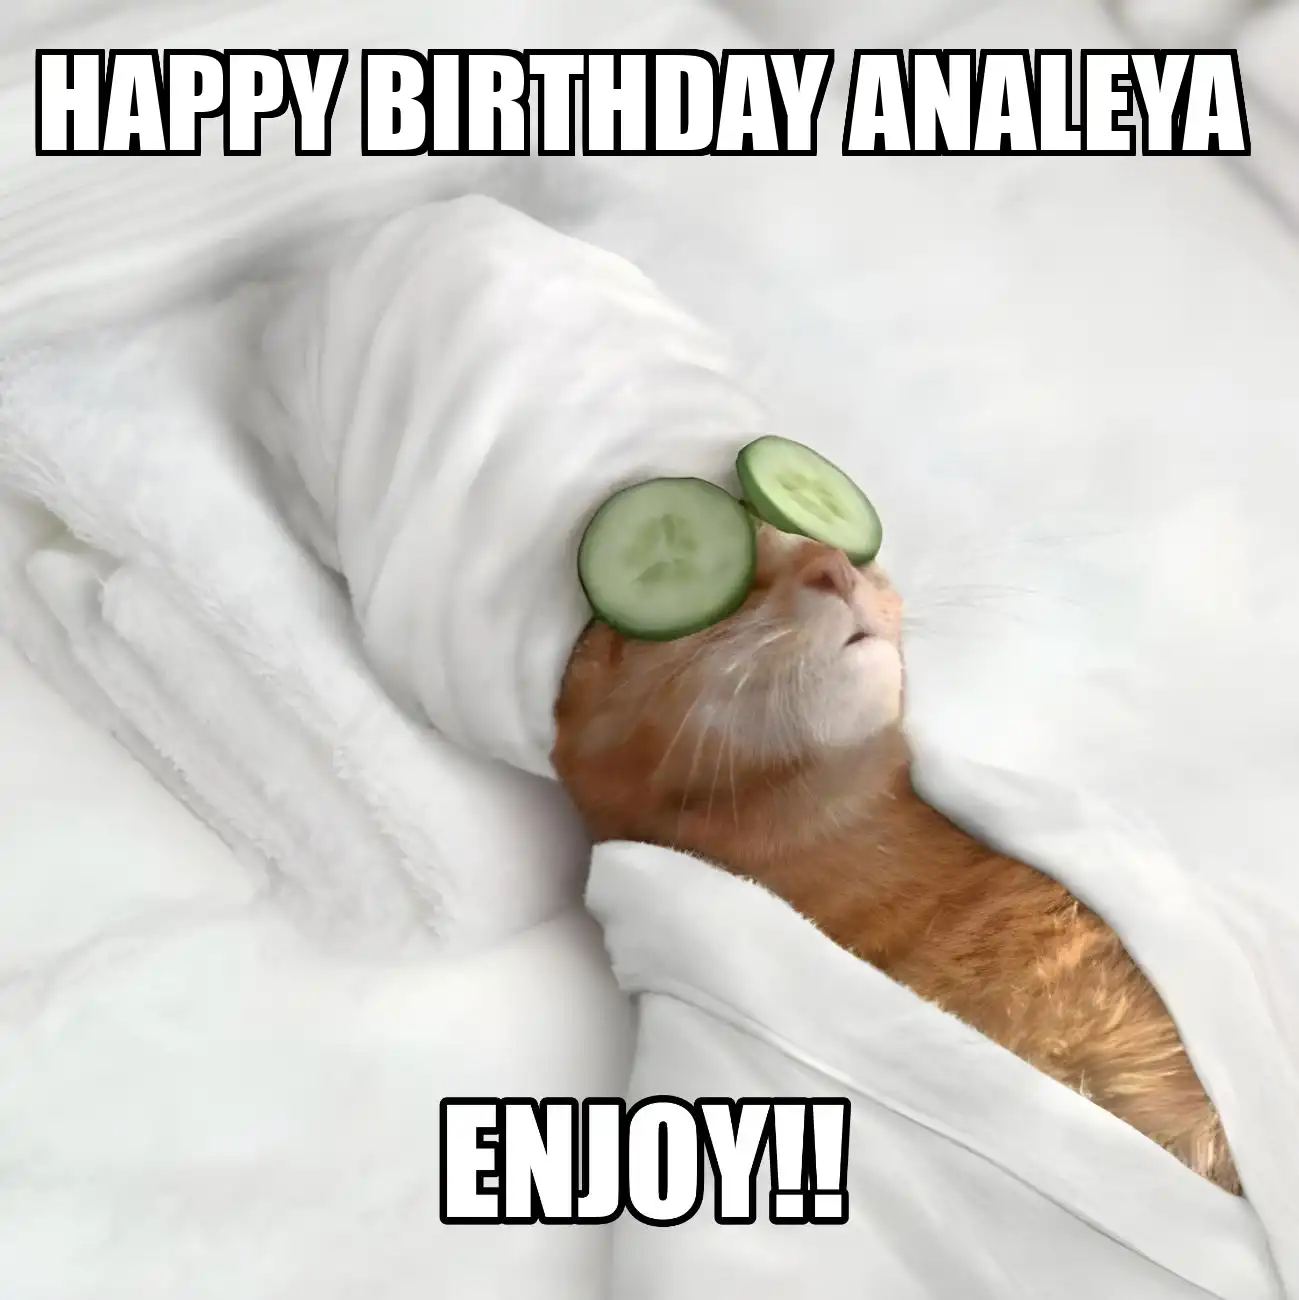 Happy Birthday Analeya Enjoy Cat Meme